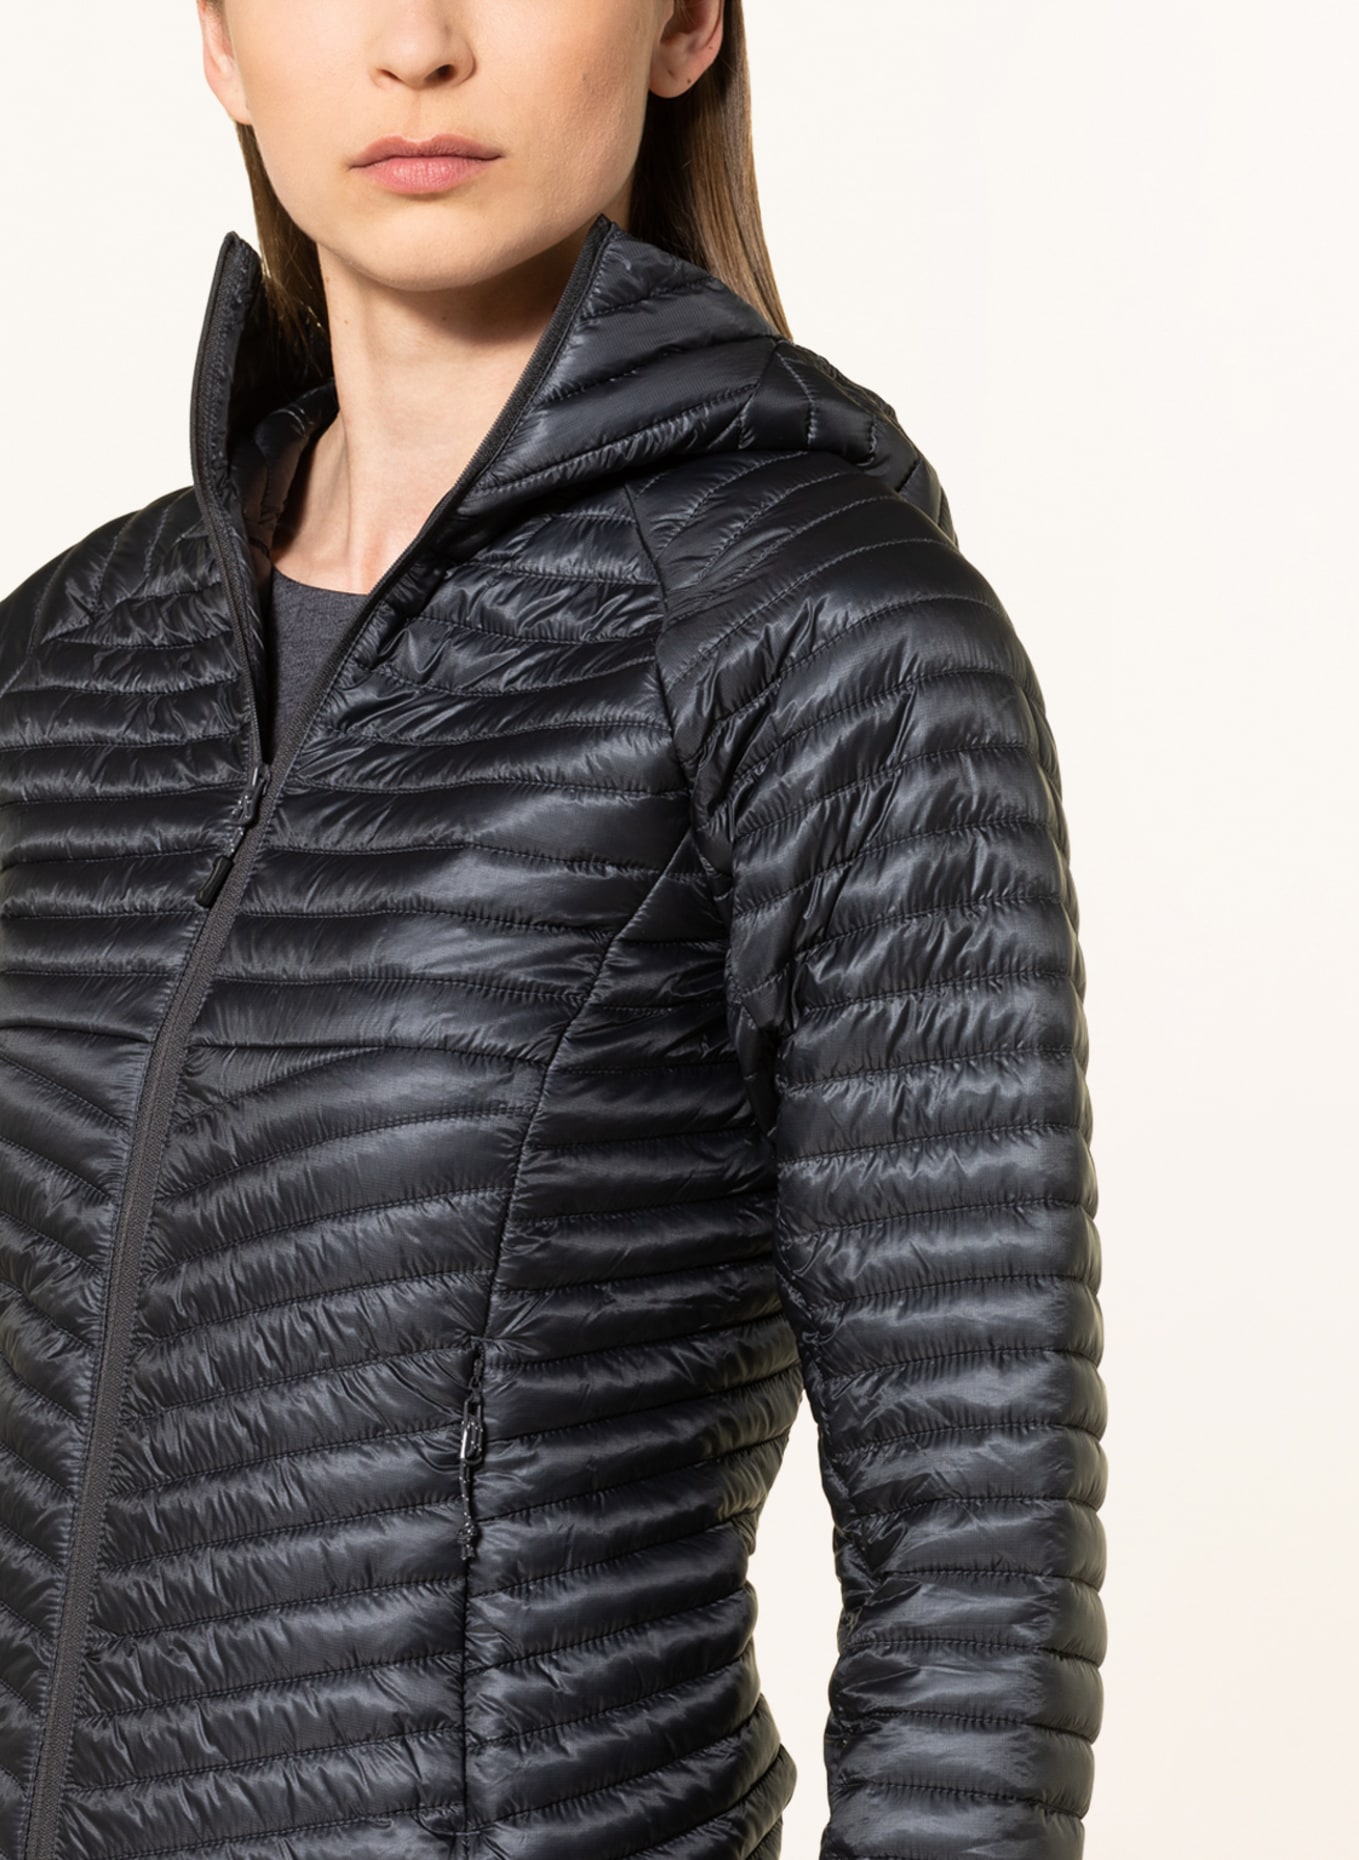 me°ru' Outdoor jacket KIPNUK, Color: BLACK (Image 5)